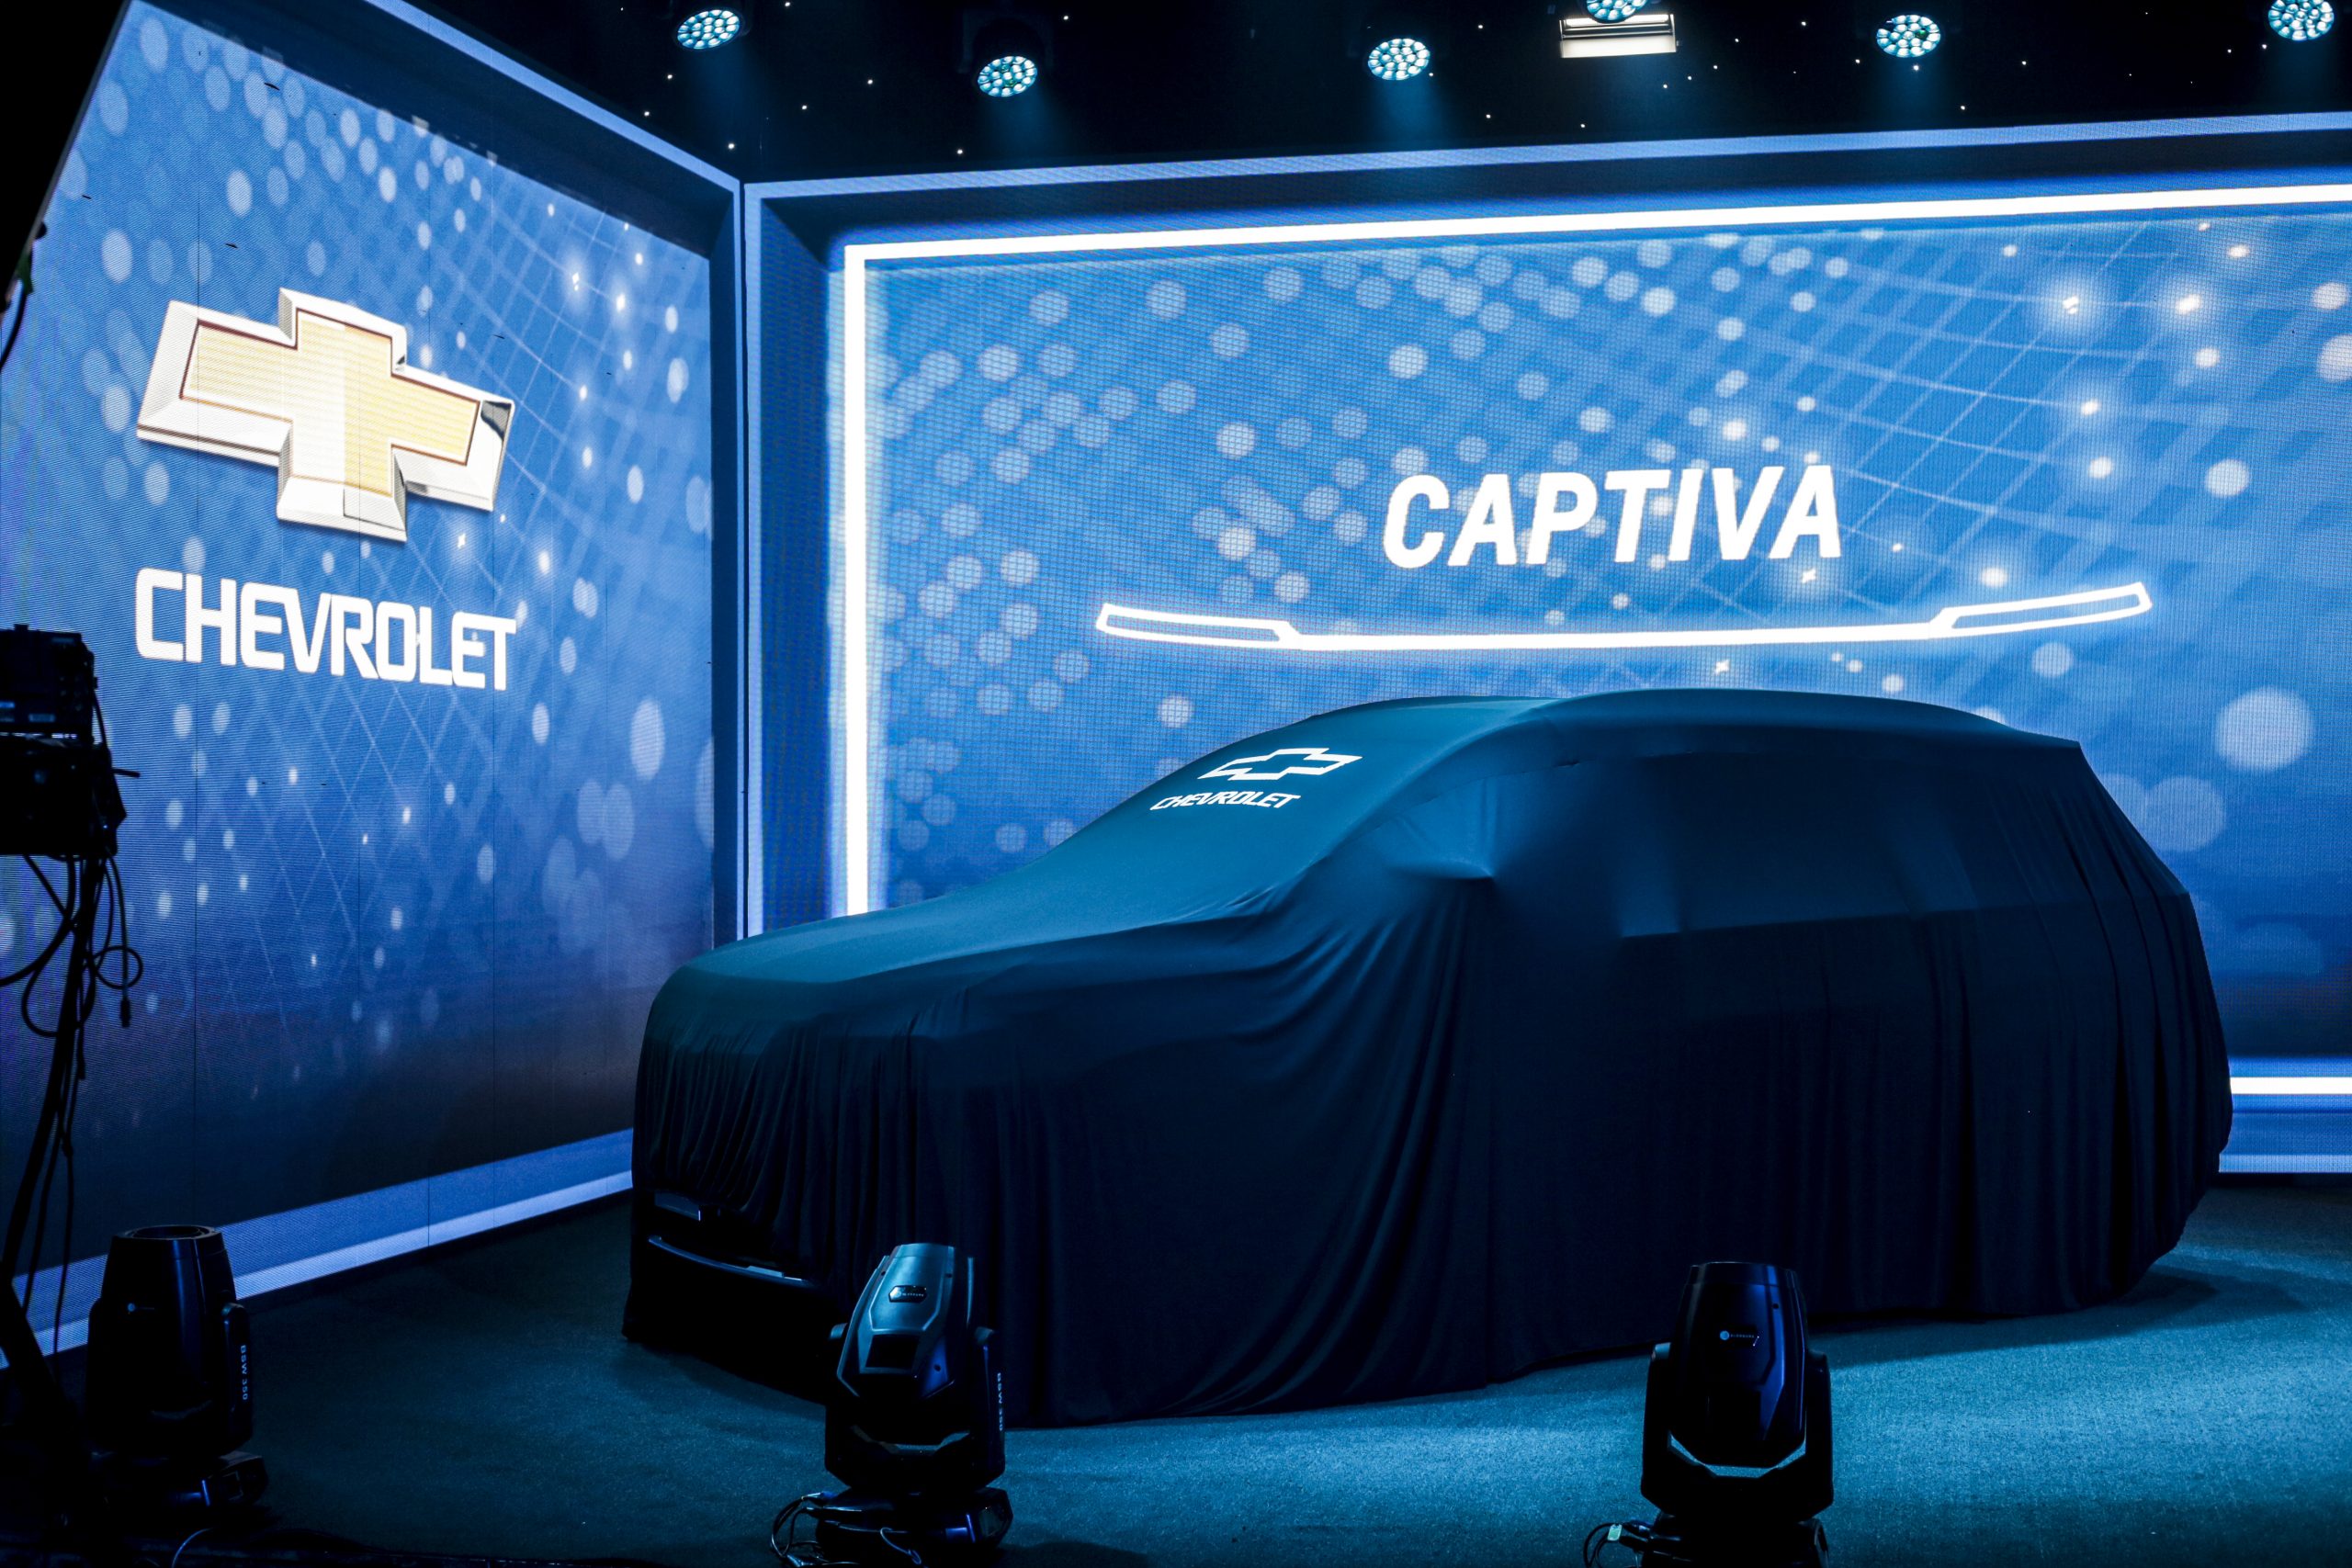 Chevrolet Captiva 2022 llega a Guatemala y es toda una nave! – Publinews